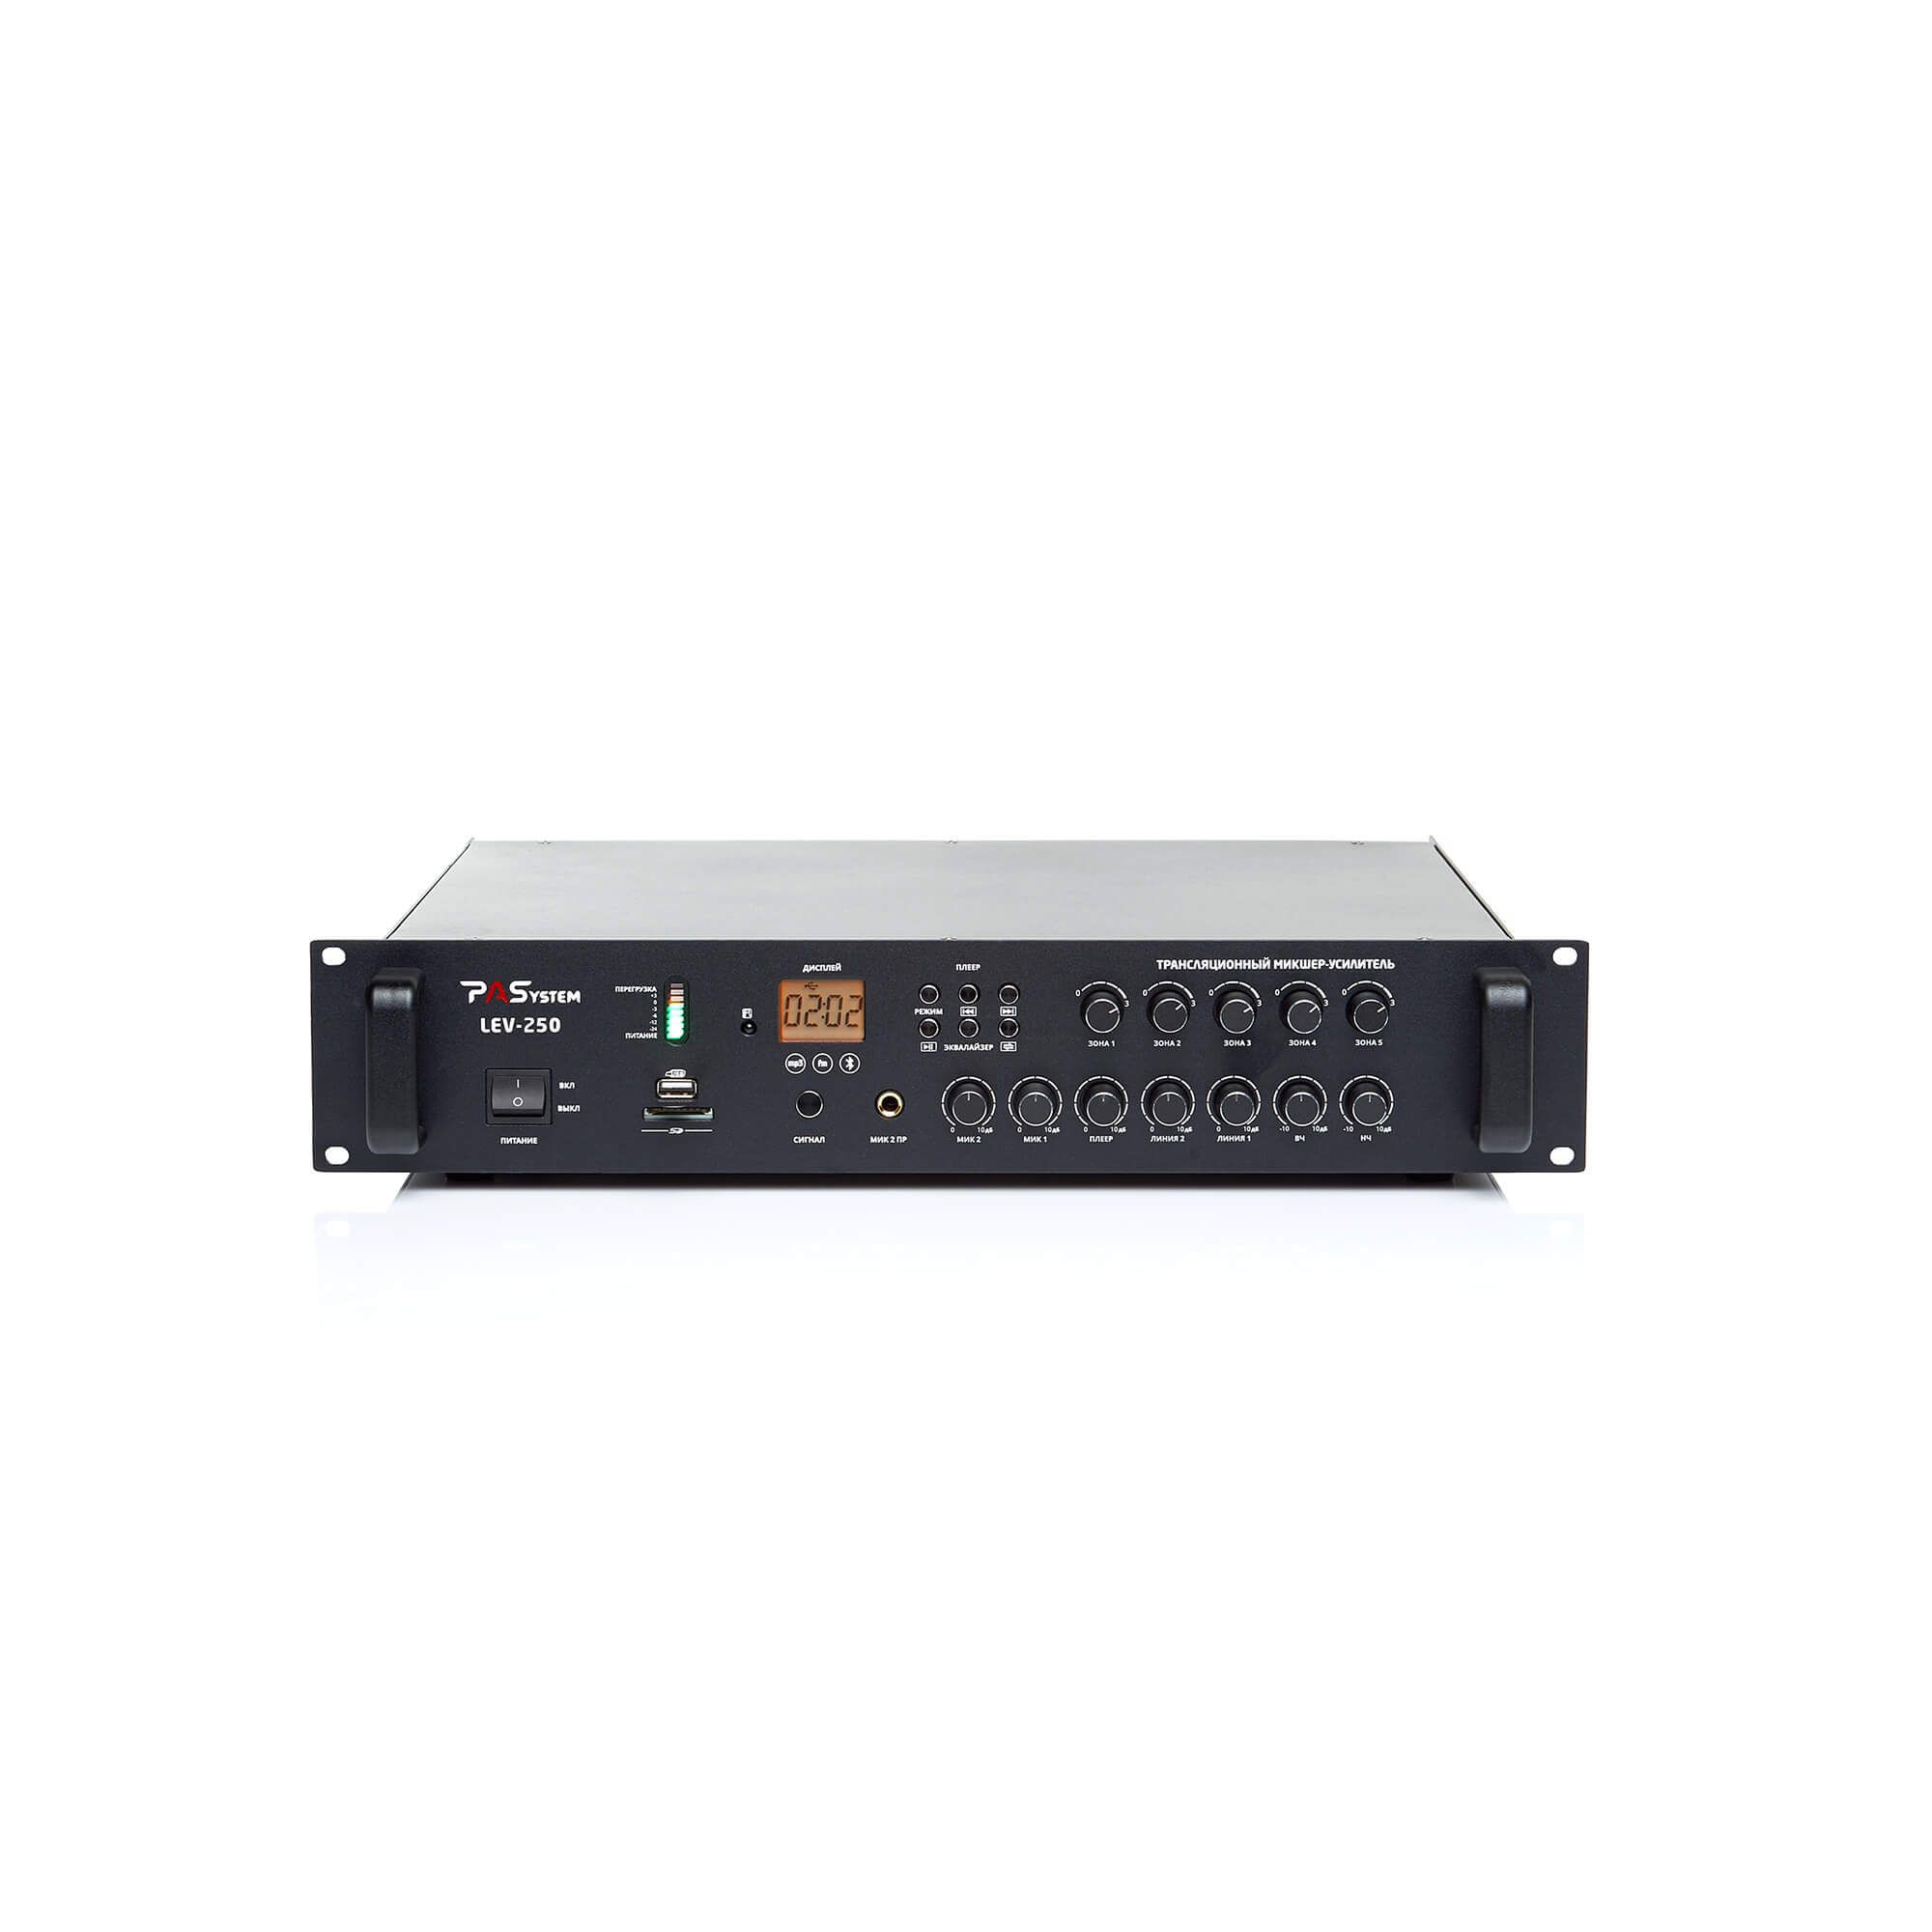 Трансляционный микшер-усилитель 5 зон с MP3-BT-FM плеером PASystem LEV-250